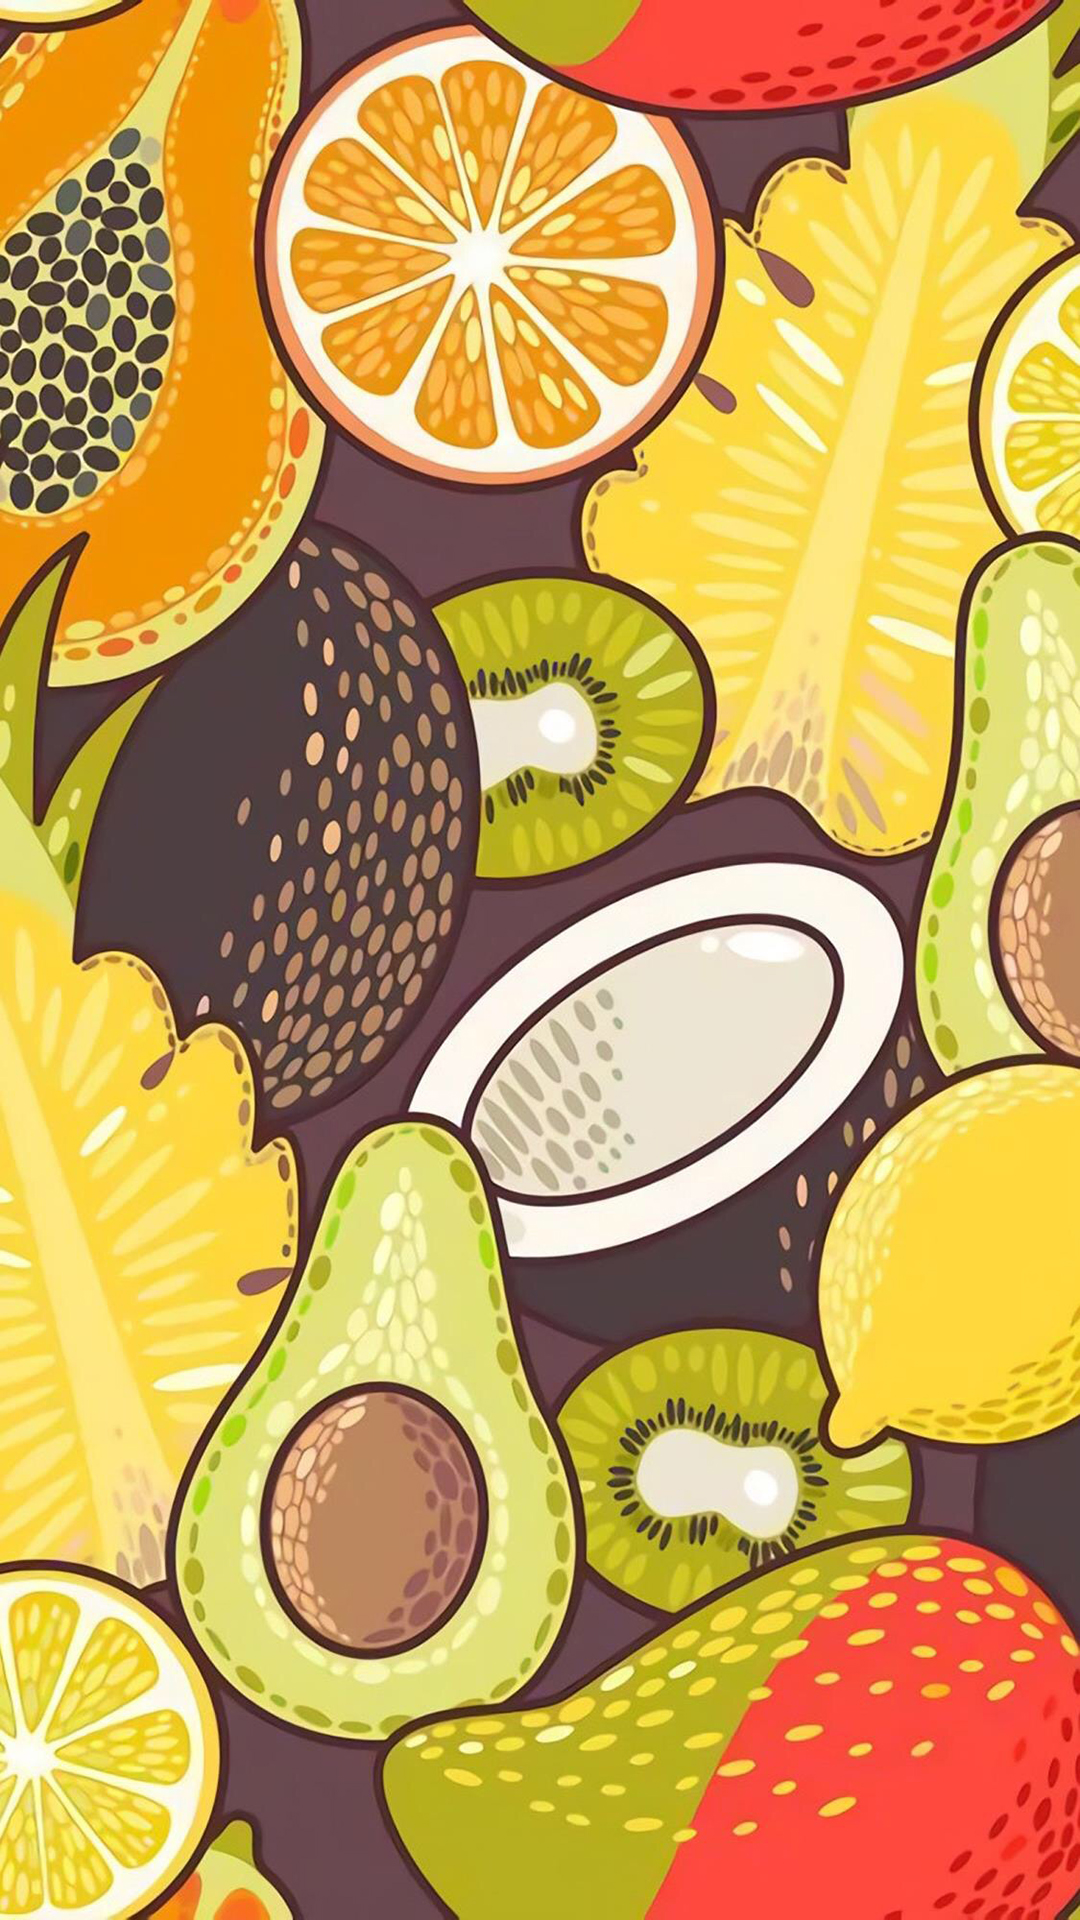 创意水果炫彩平铺手机壁纸